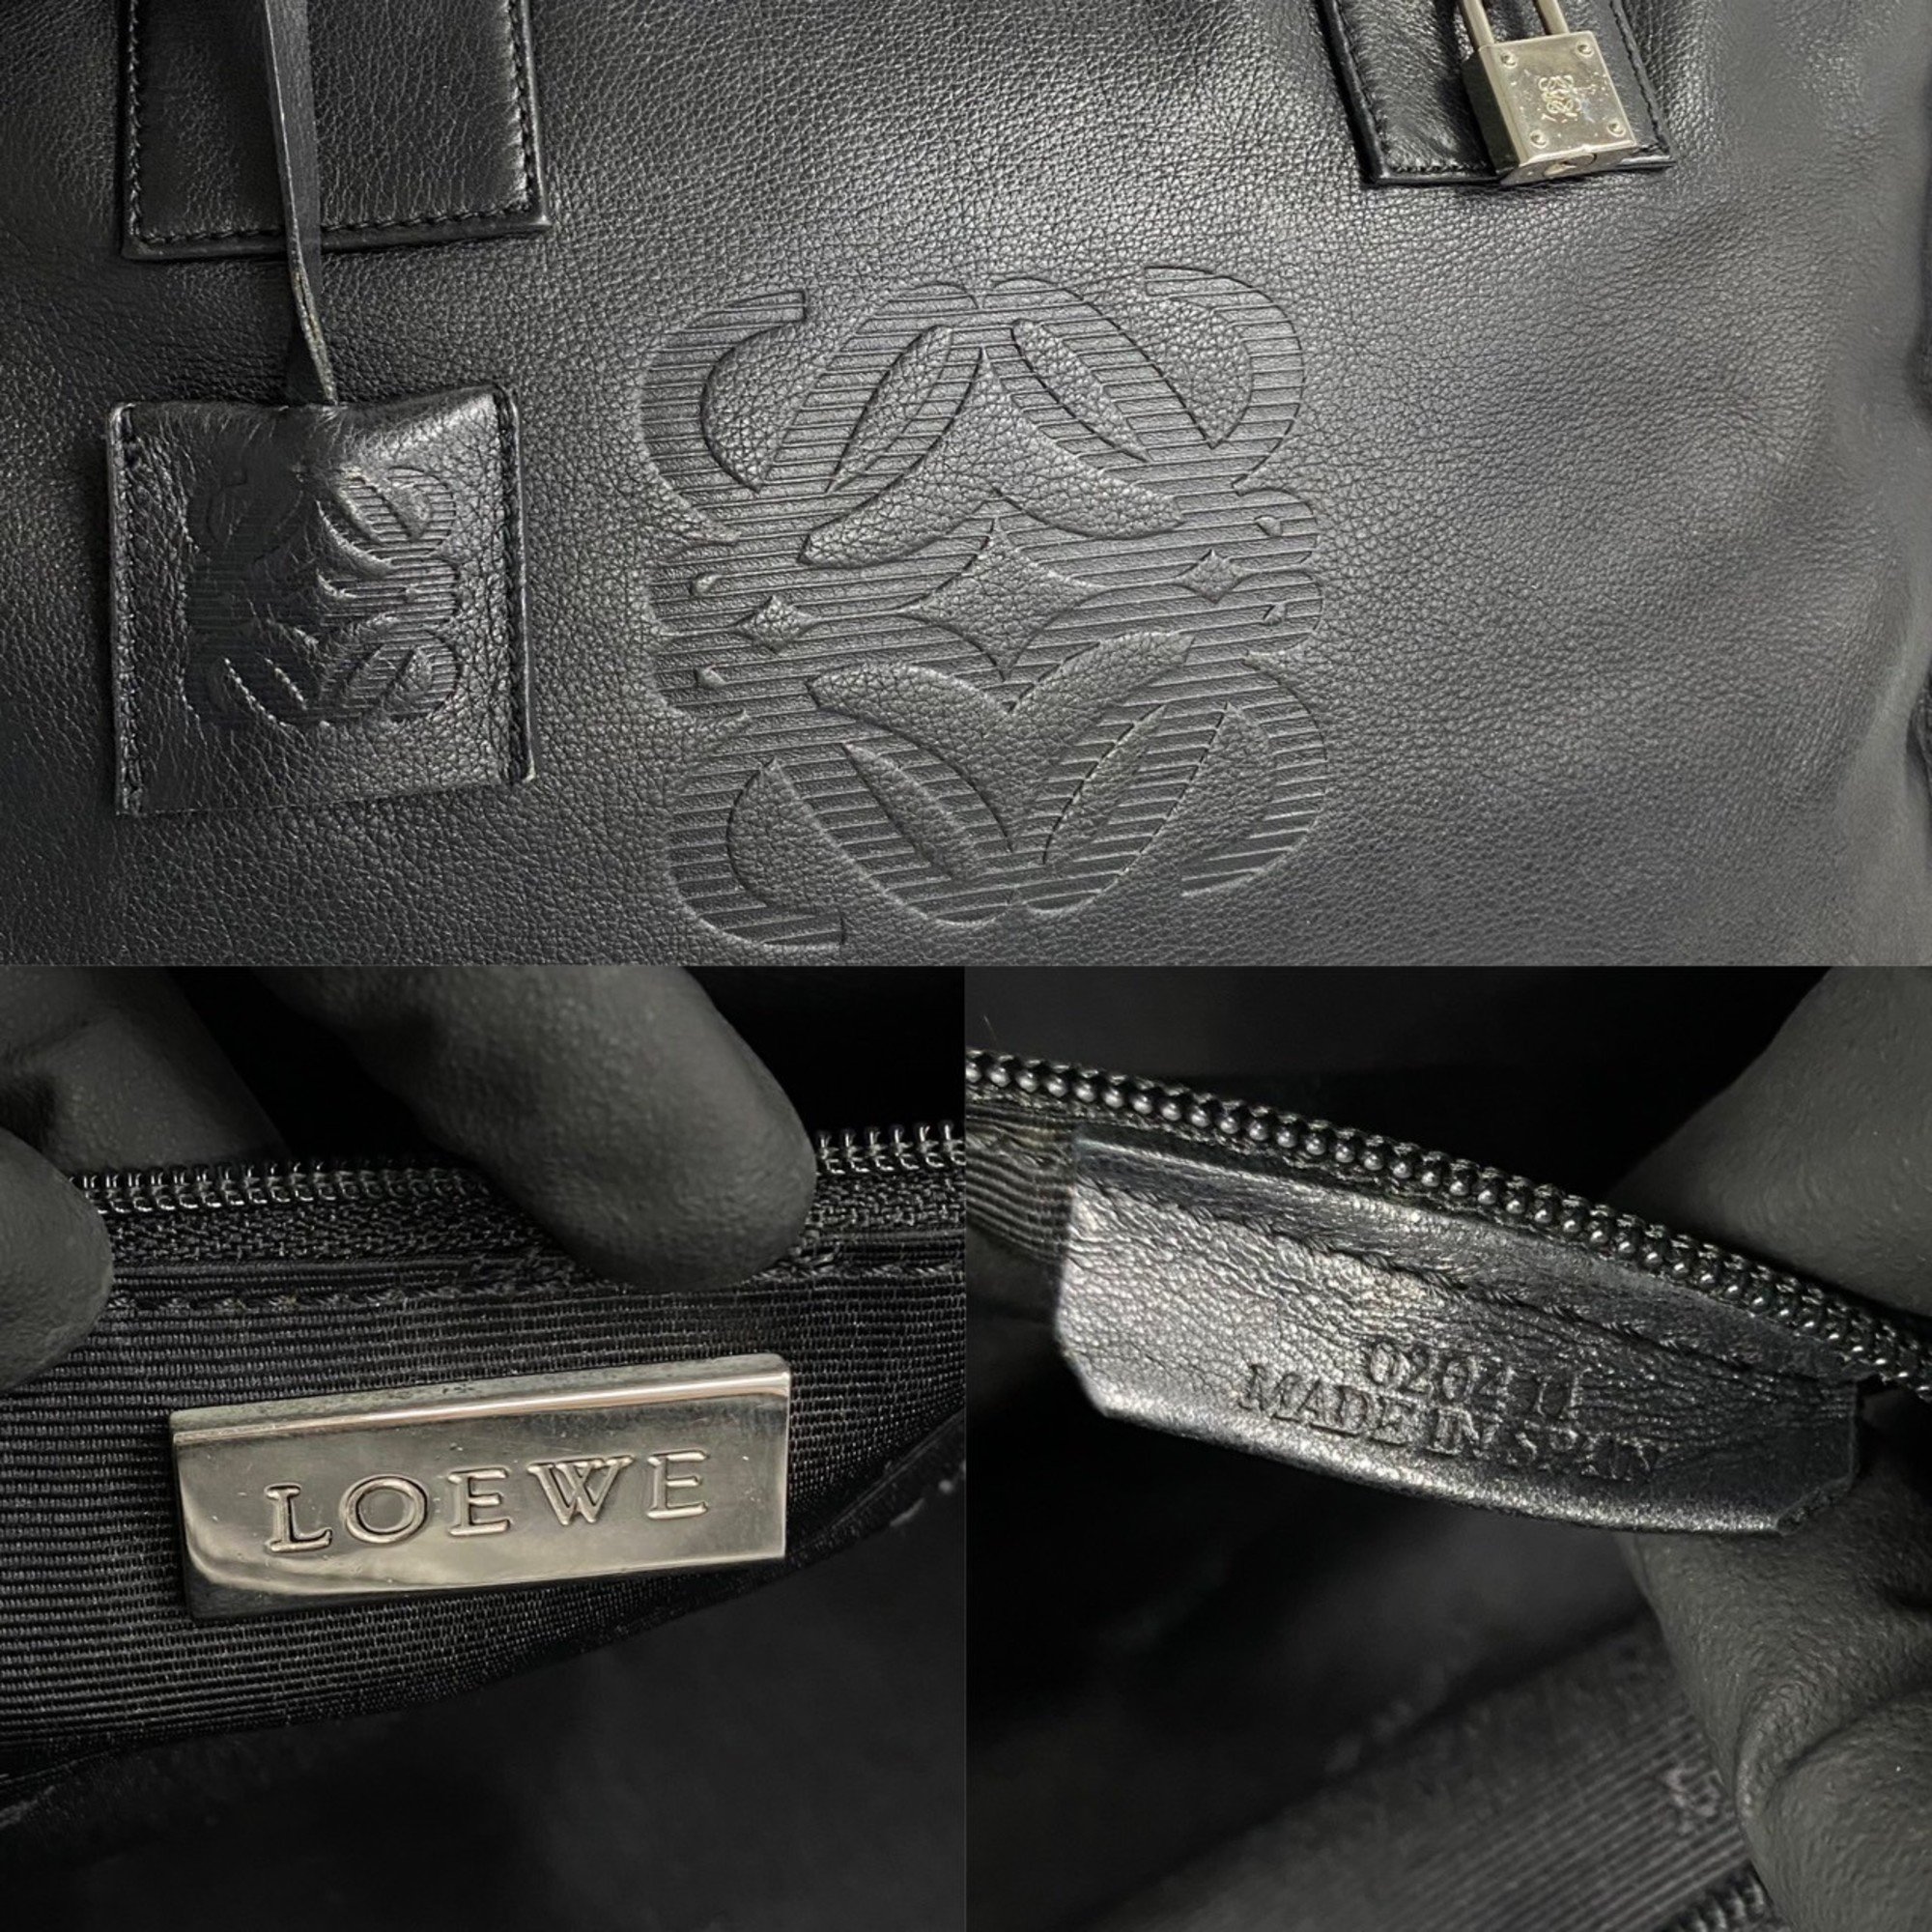 LOEWE Amazona 36 Anagram Leather Handbag Boston Bag Black 34254